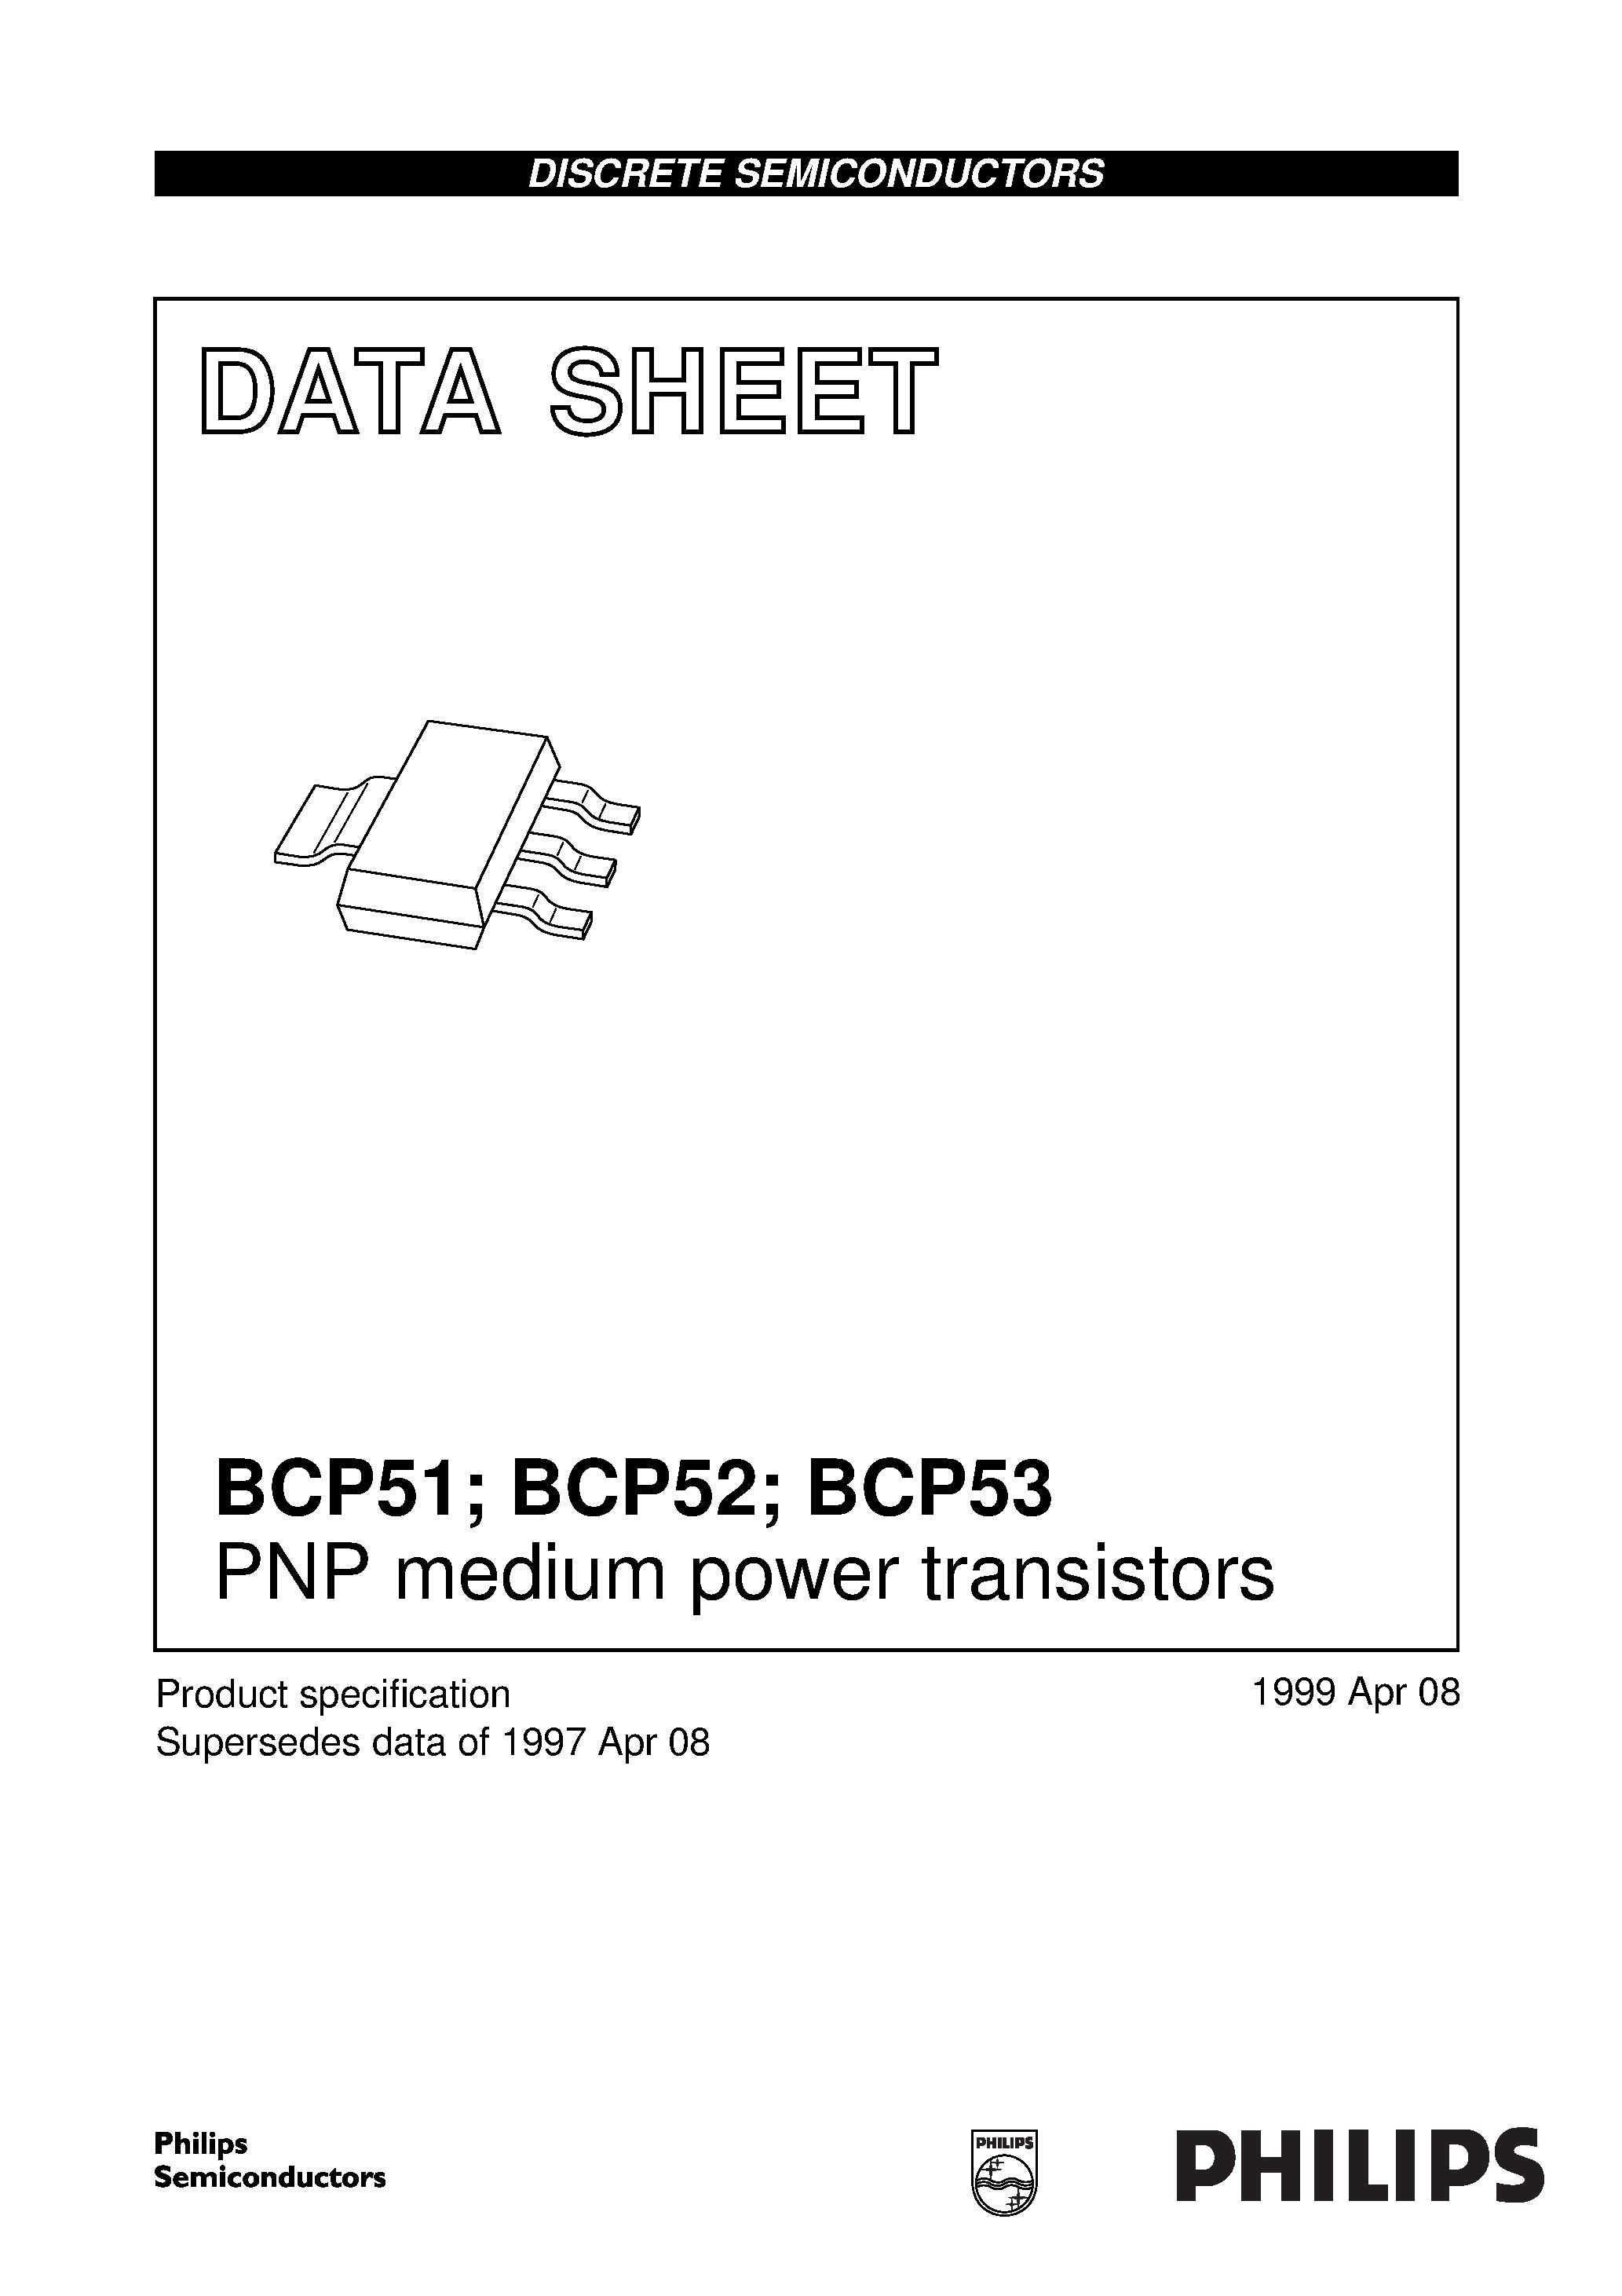 Даташит BCP53 - PNP medium power transistors страница 1